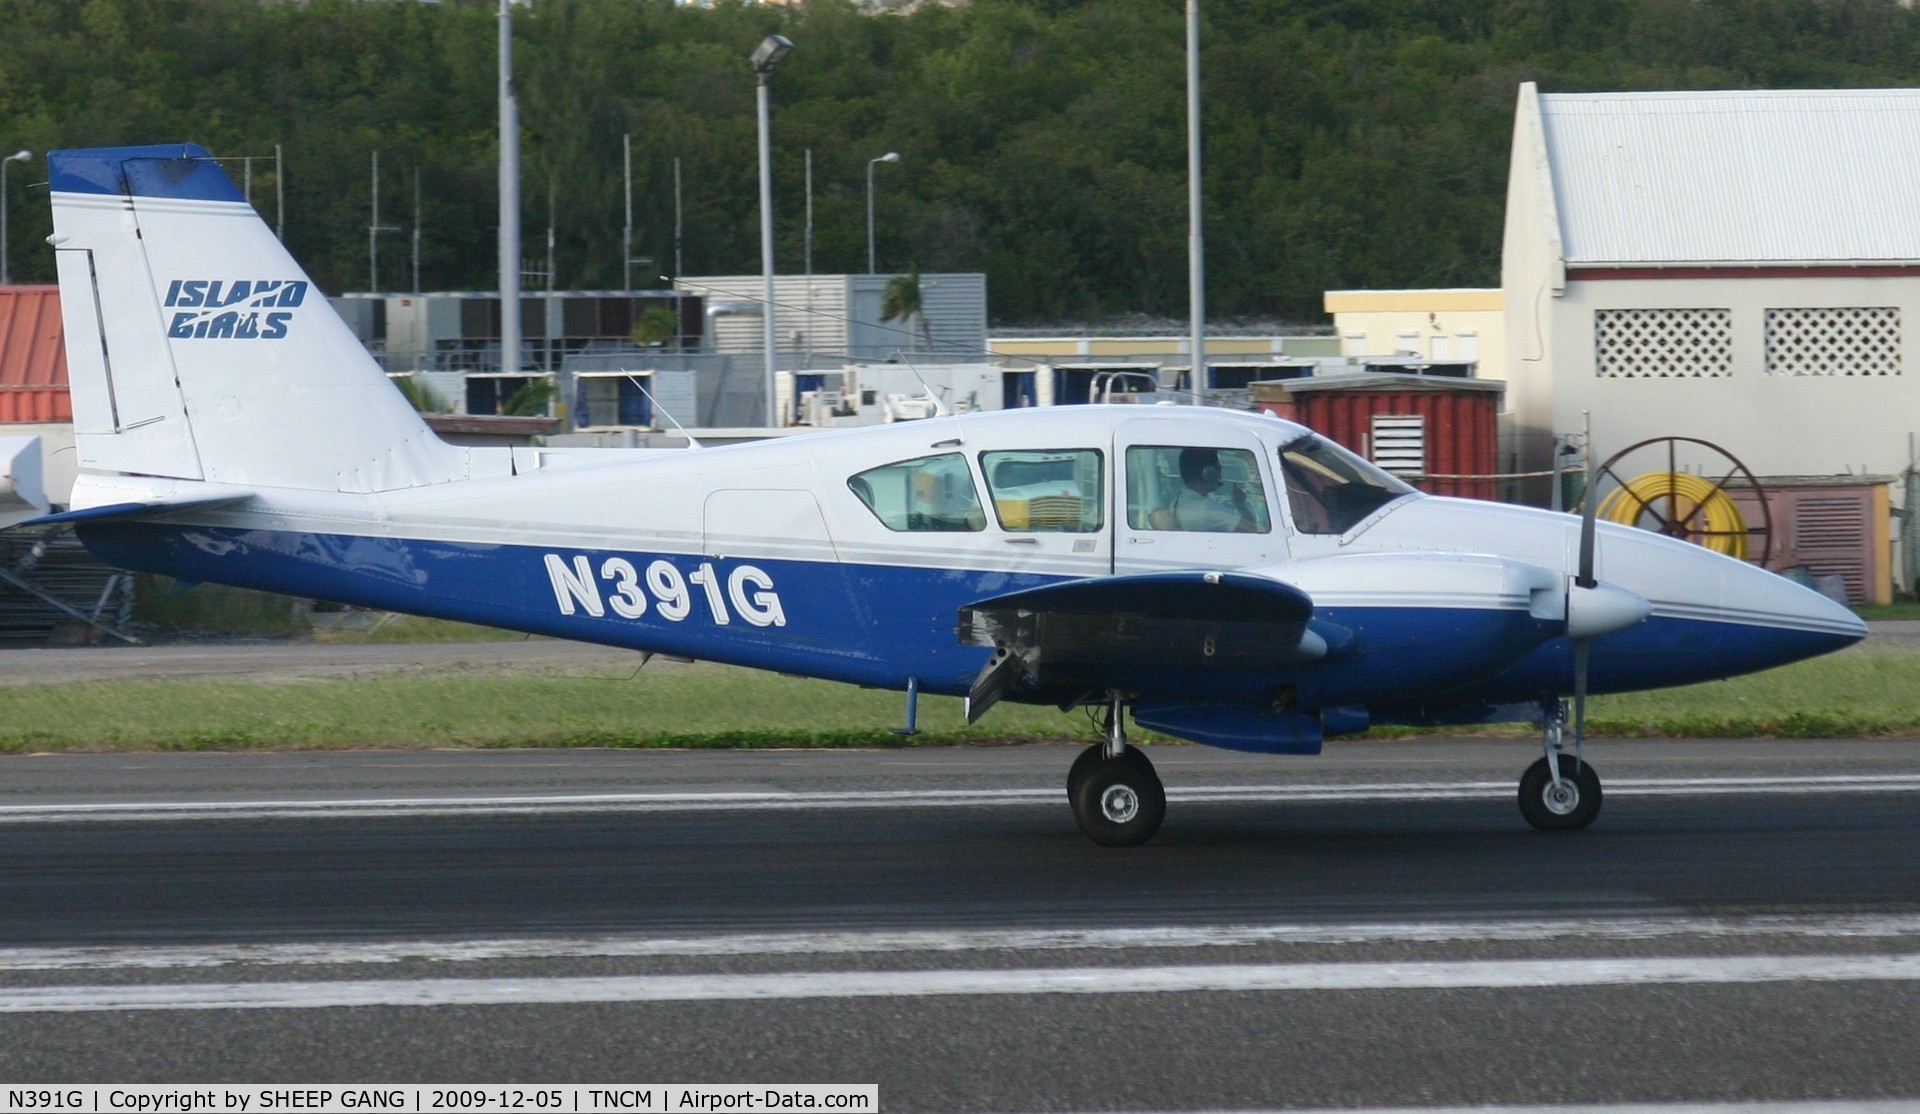 N391G, 1974 Piper PA-23-250 Aztec C/N 27-7405475, N391G departing TNCM